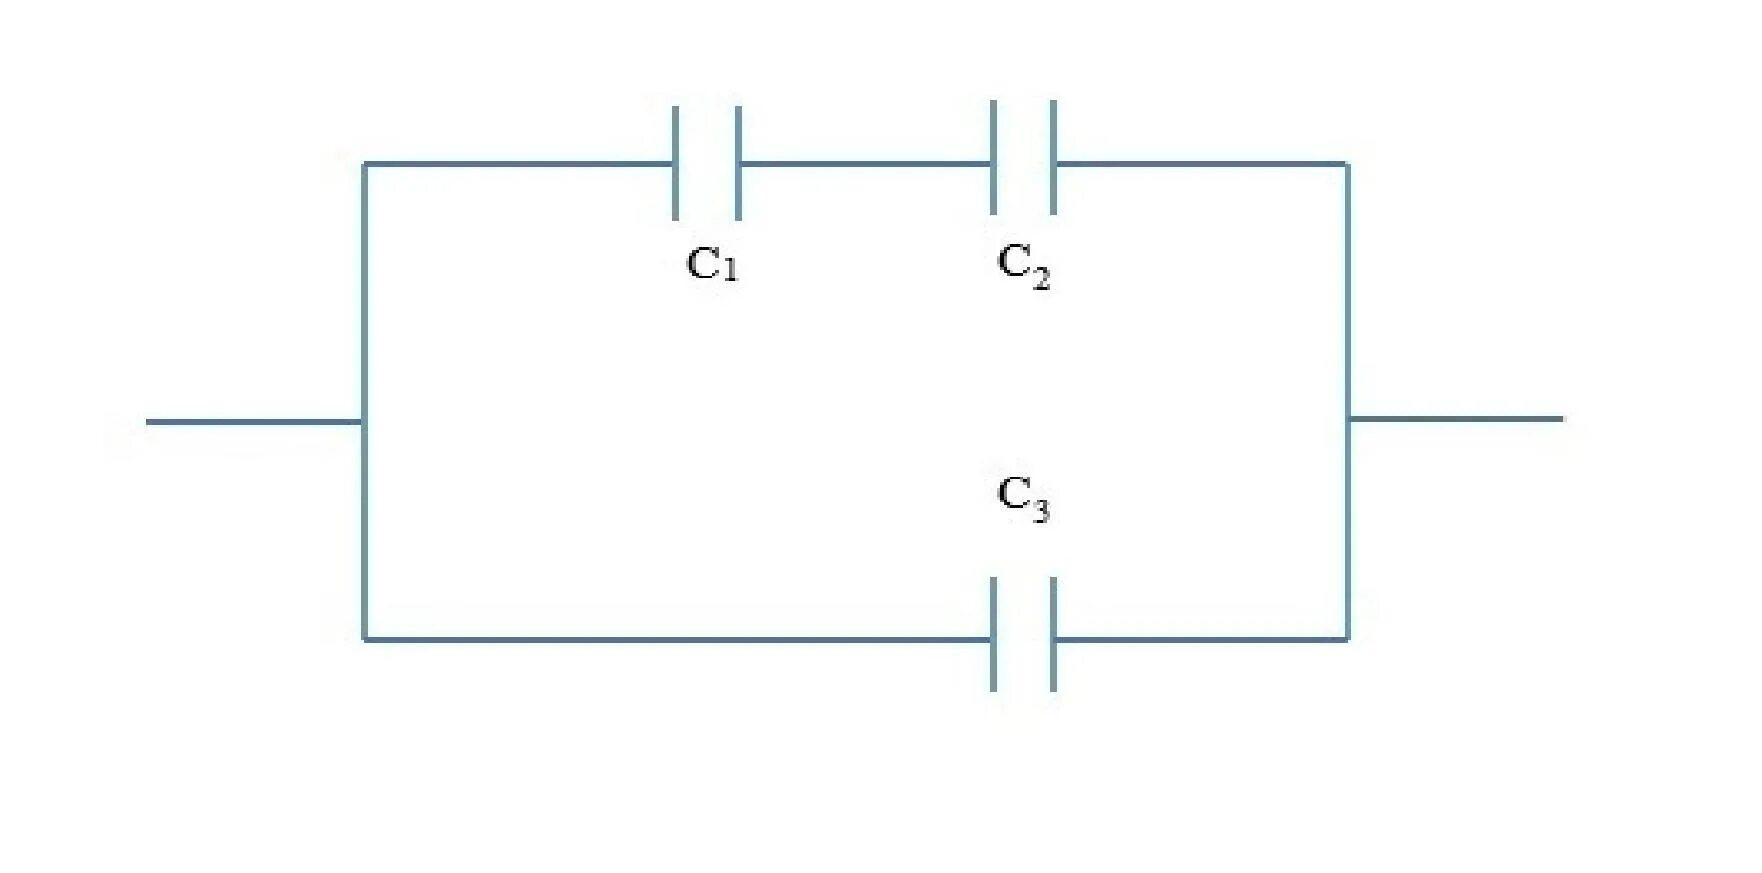 Емкость батареи конденсаторов равна с1+с2. Ёмкость батареи конденсаторов равна 5.8МКФ. Ёмкость батареи конденсаторов 4мкф. Схема емкостной АКБ. Определите емкость батареи конденсаторов изображенной